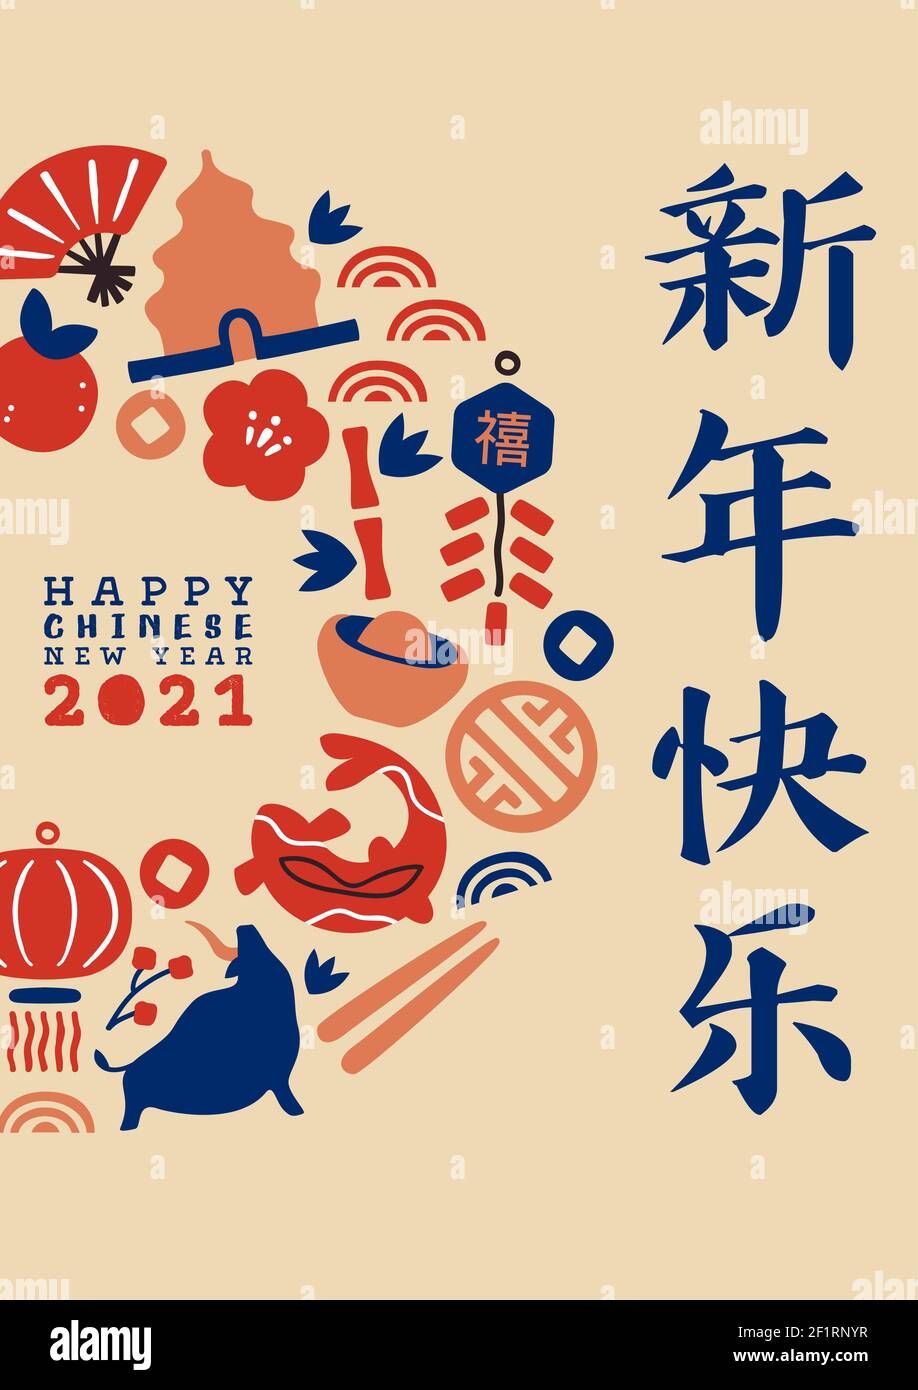 Felice cinese nuovo anno del bue 2021. Illustrazione del biglietto d'auguri, la decorazione dell'icona della cultura asiatica include animale toro, fiore di prugne, foglia di bambù. Chiama Illustrazione Vettoriale